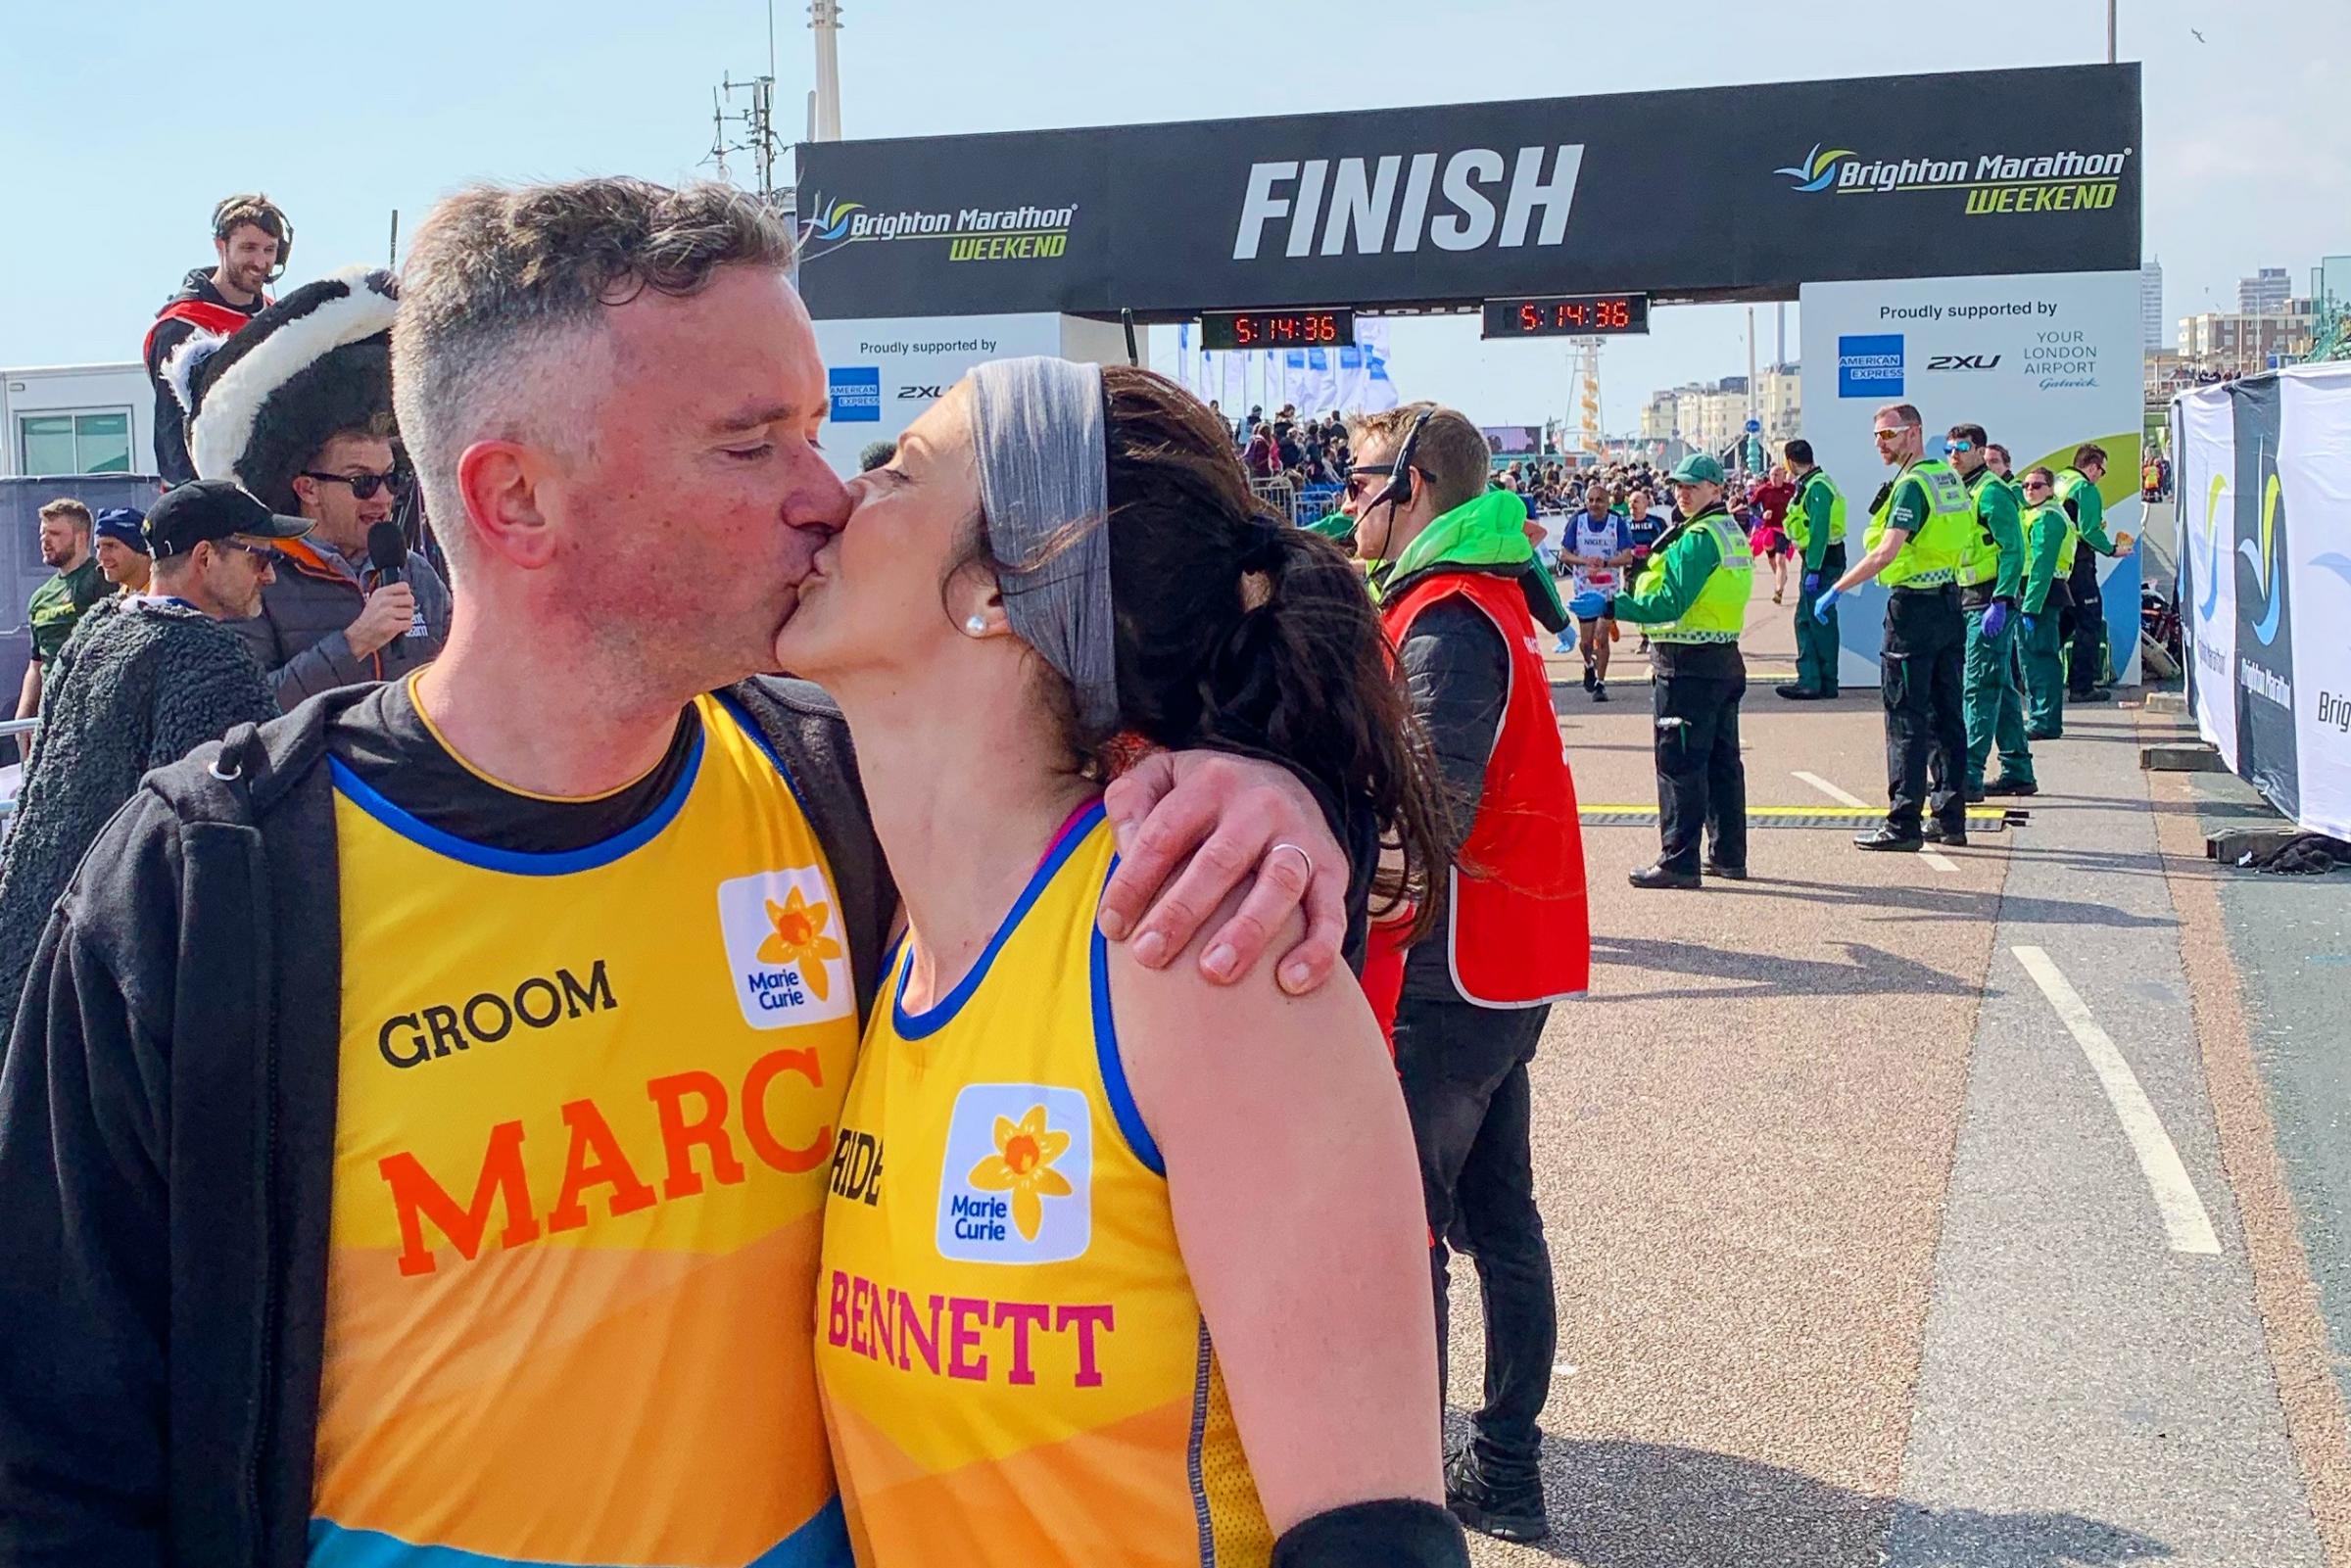 Couple get MARRIED during Brighton Marathon 2019